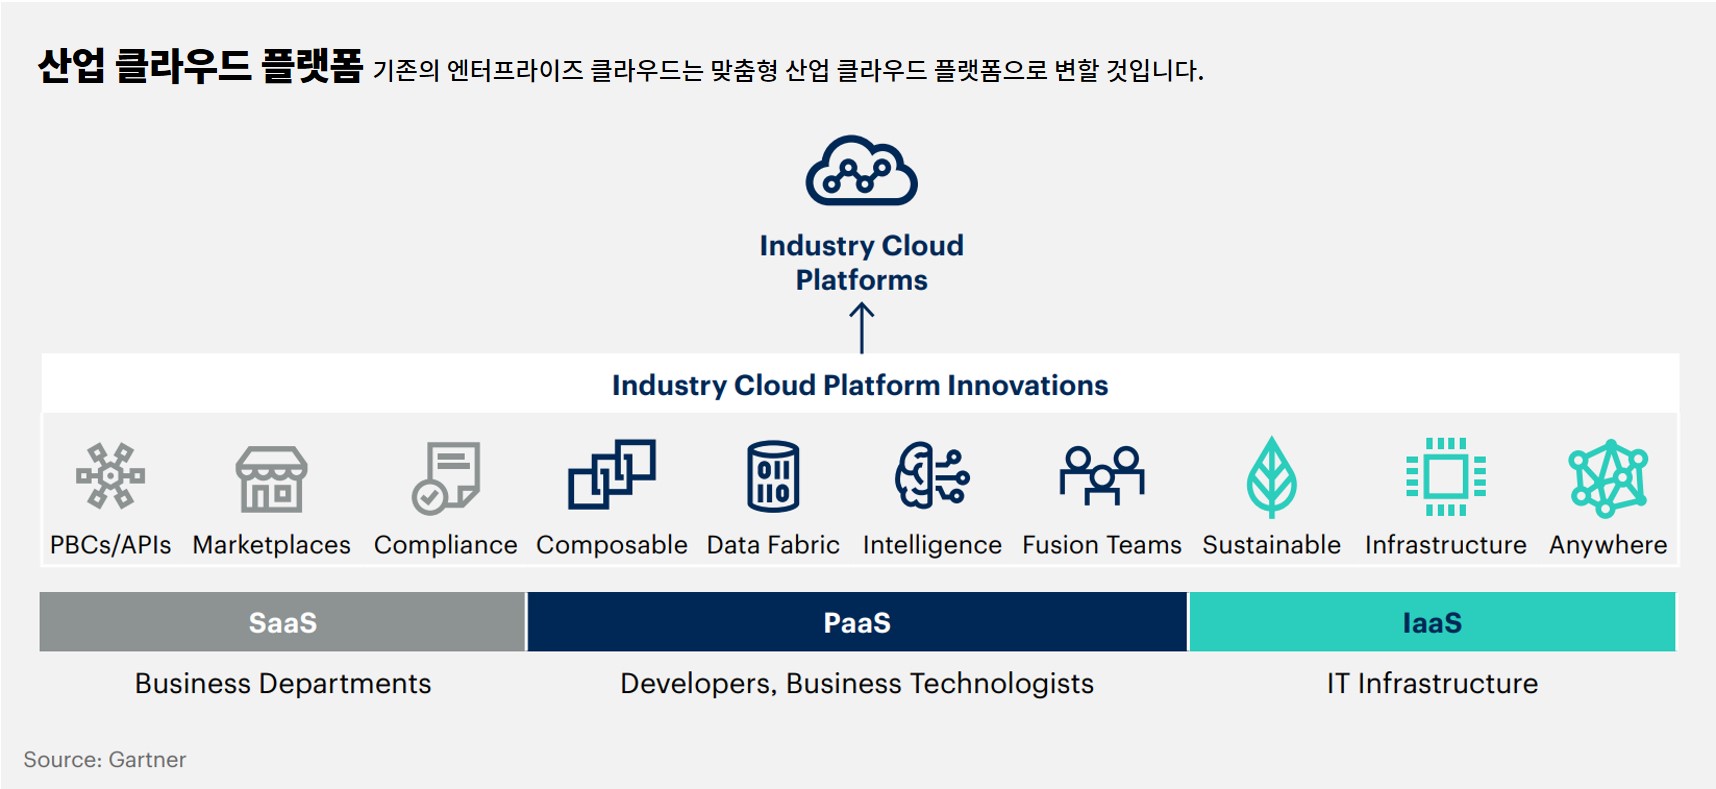 산업 클라우드 플랫폼(Industry Cloud Platforms)